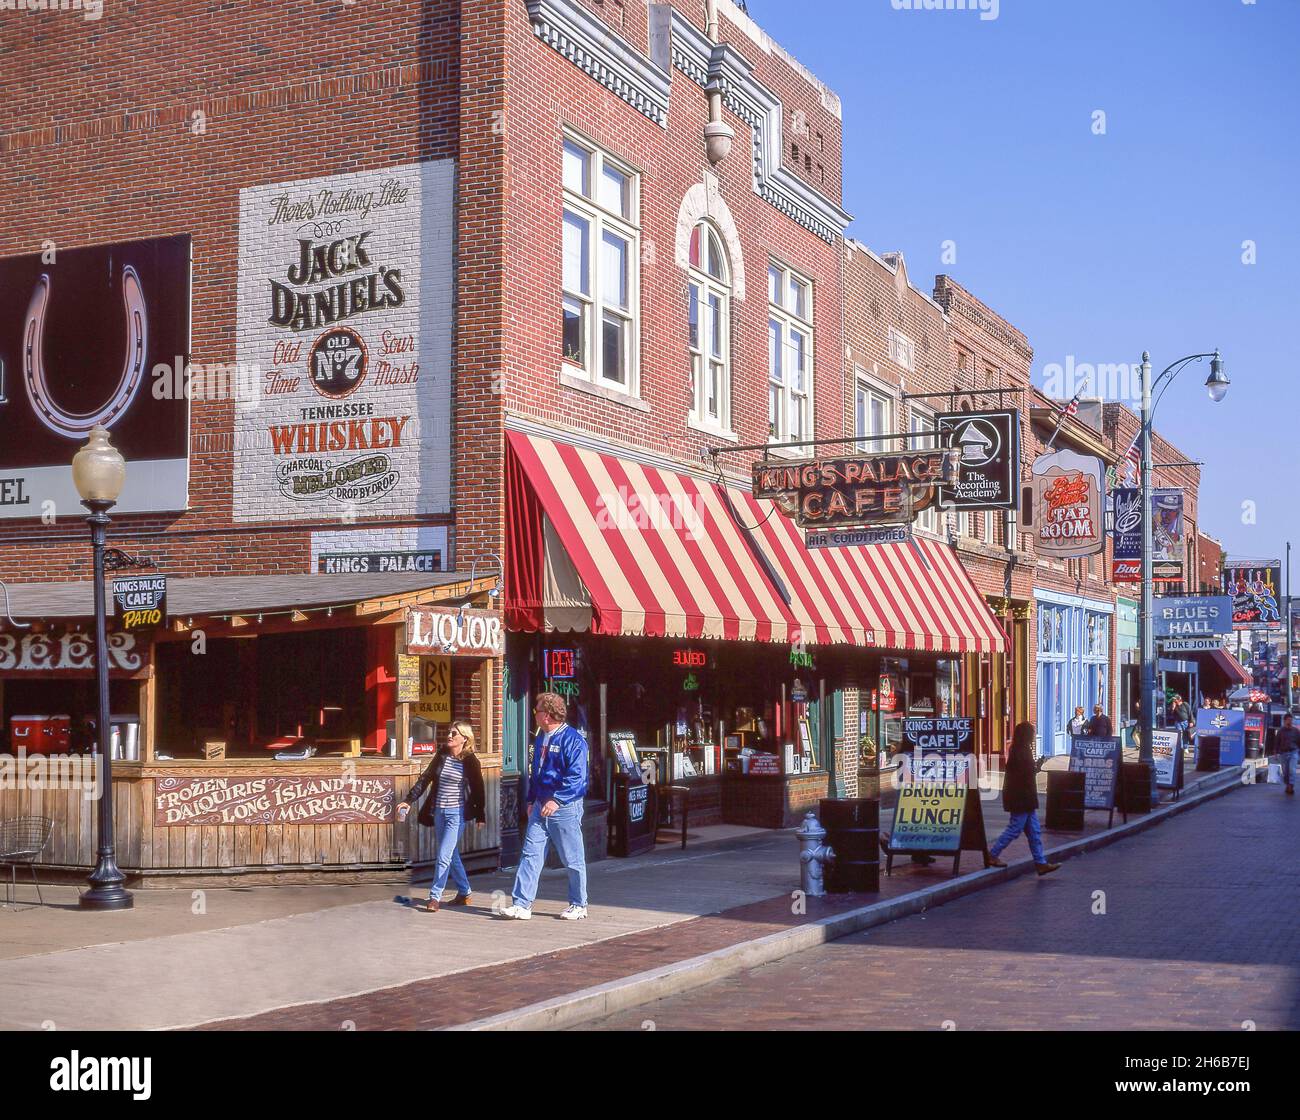 King's Palace Cafe et bars de blues, Beale Street, Beale Street District, Memphis, Tennessee,États-Unis d'Amérique Banque D'Images